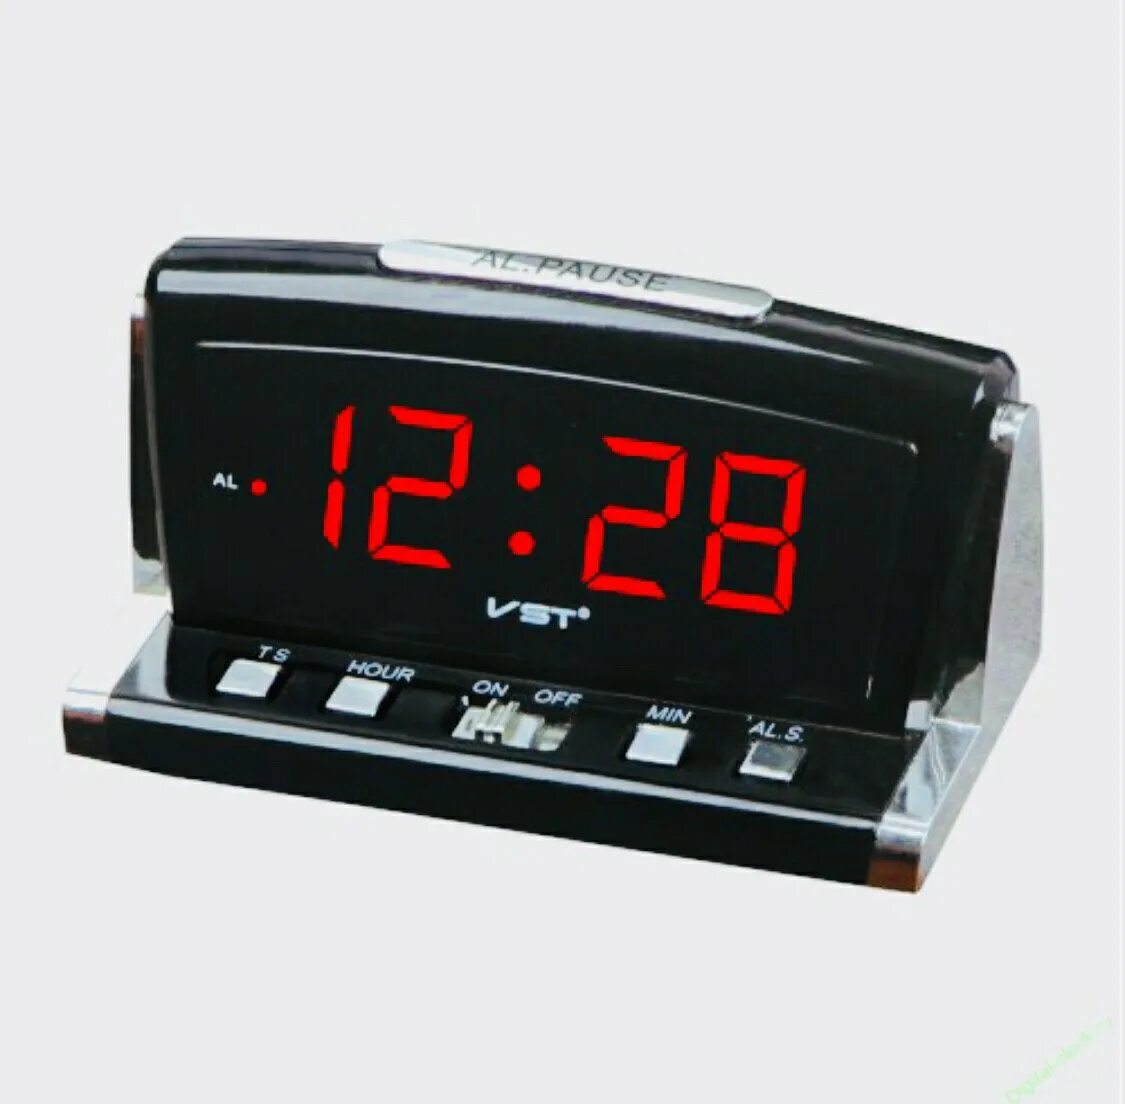 Настольные часы будильник vst. Часы настольные VST 718-4. Часы VST 718-4. Часы электронные VST 718. Часы-будильник настольные VST 718.